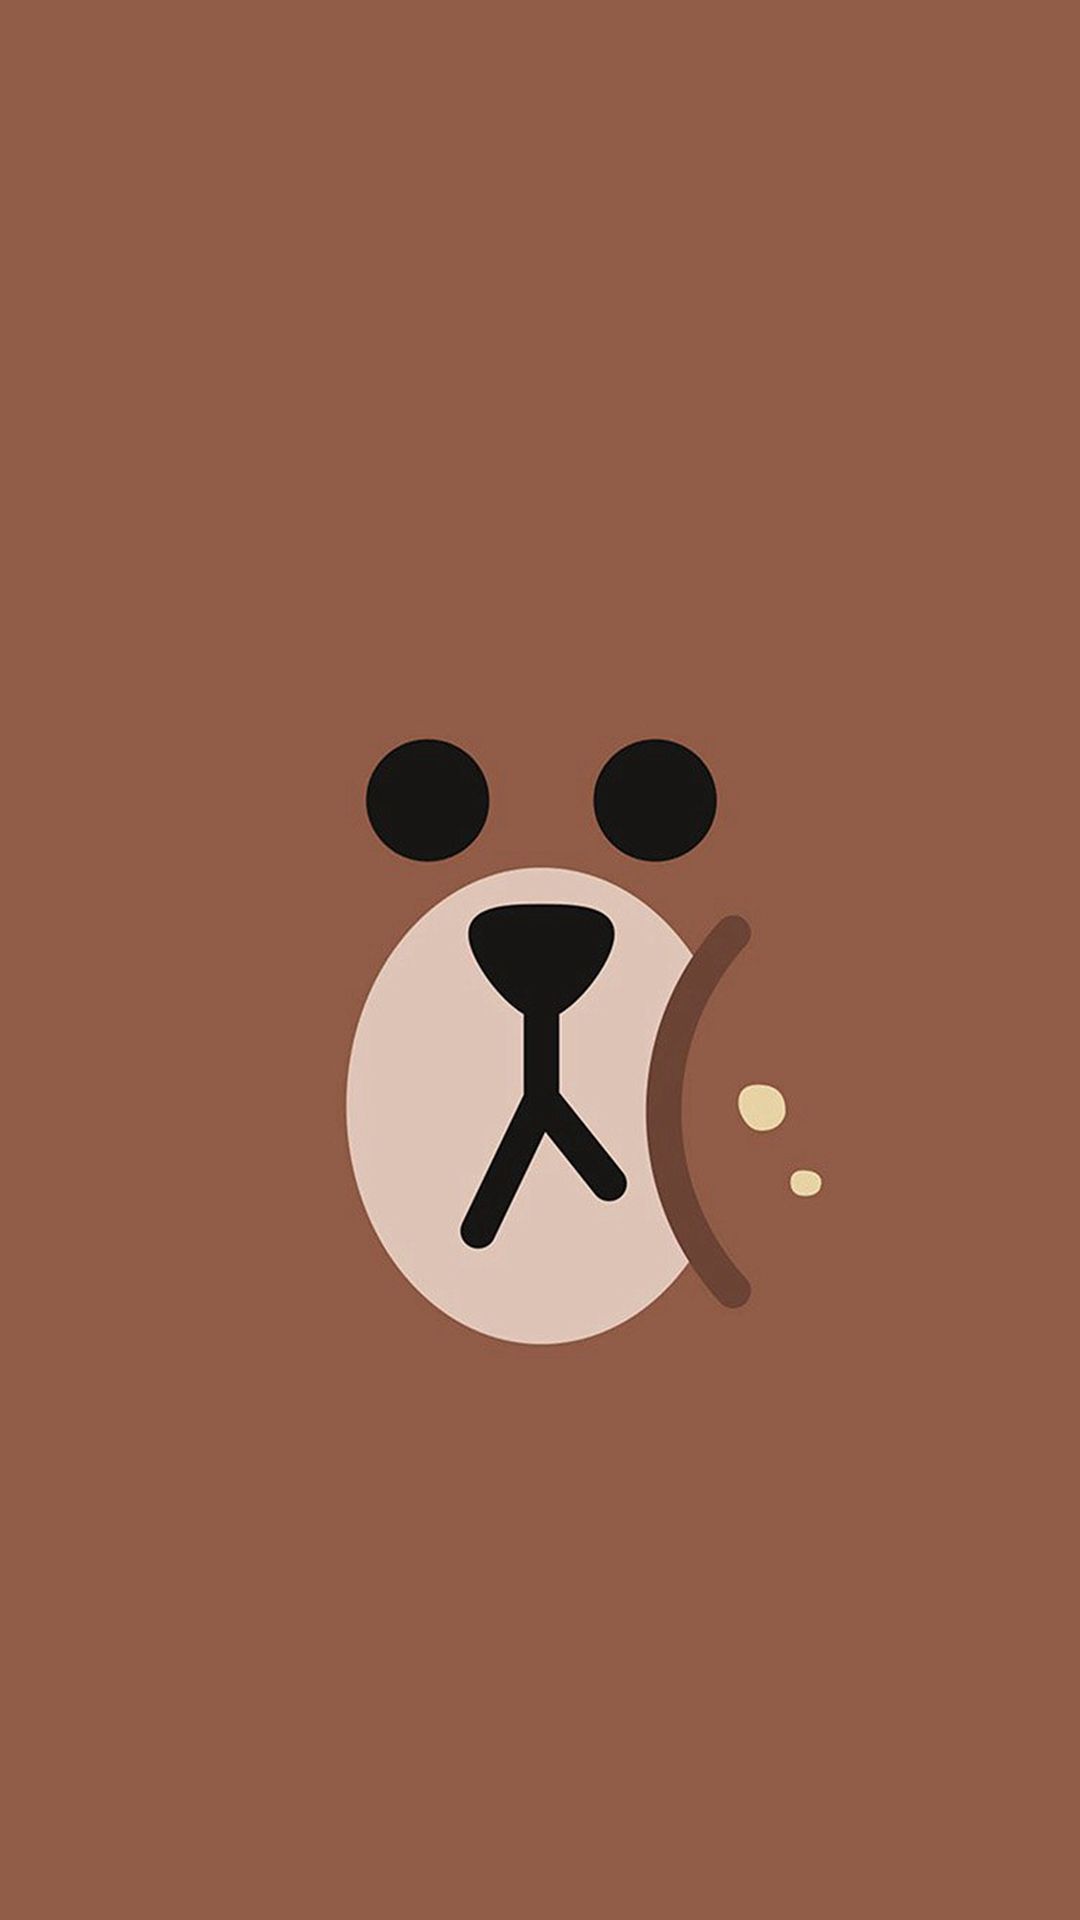 Hình nền gấu nâu Bạn yêu thích sự dễ thương của gấu nâu? Hãy thử đổi hình nền của điện thoại của bạn với các bức ảnh gấu nâu đáng yêu. Gấu nâu là biểu tượng của sự dịu dàng và hạnh phúc, chắc chắn sẽ làm bạn yêu thích điện thoại của mình hơn.